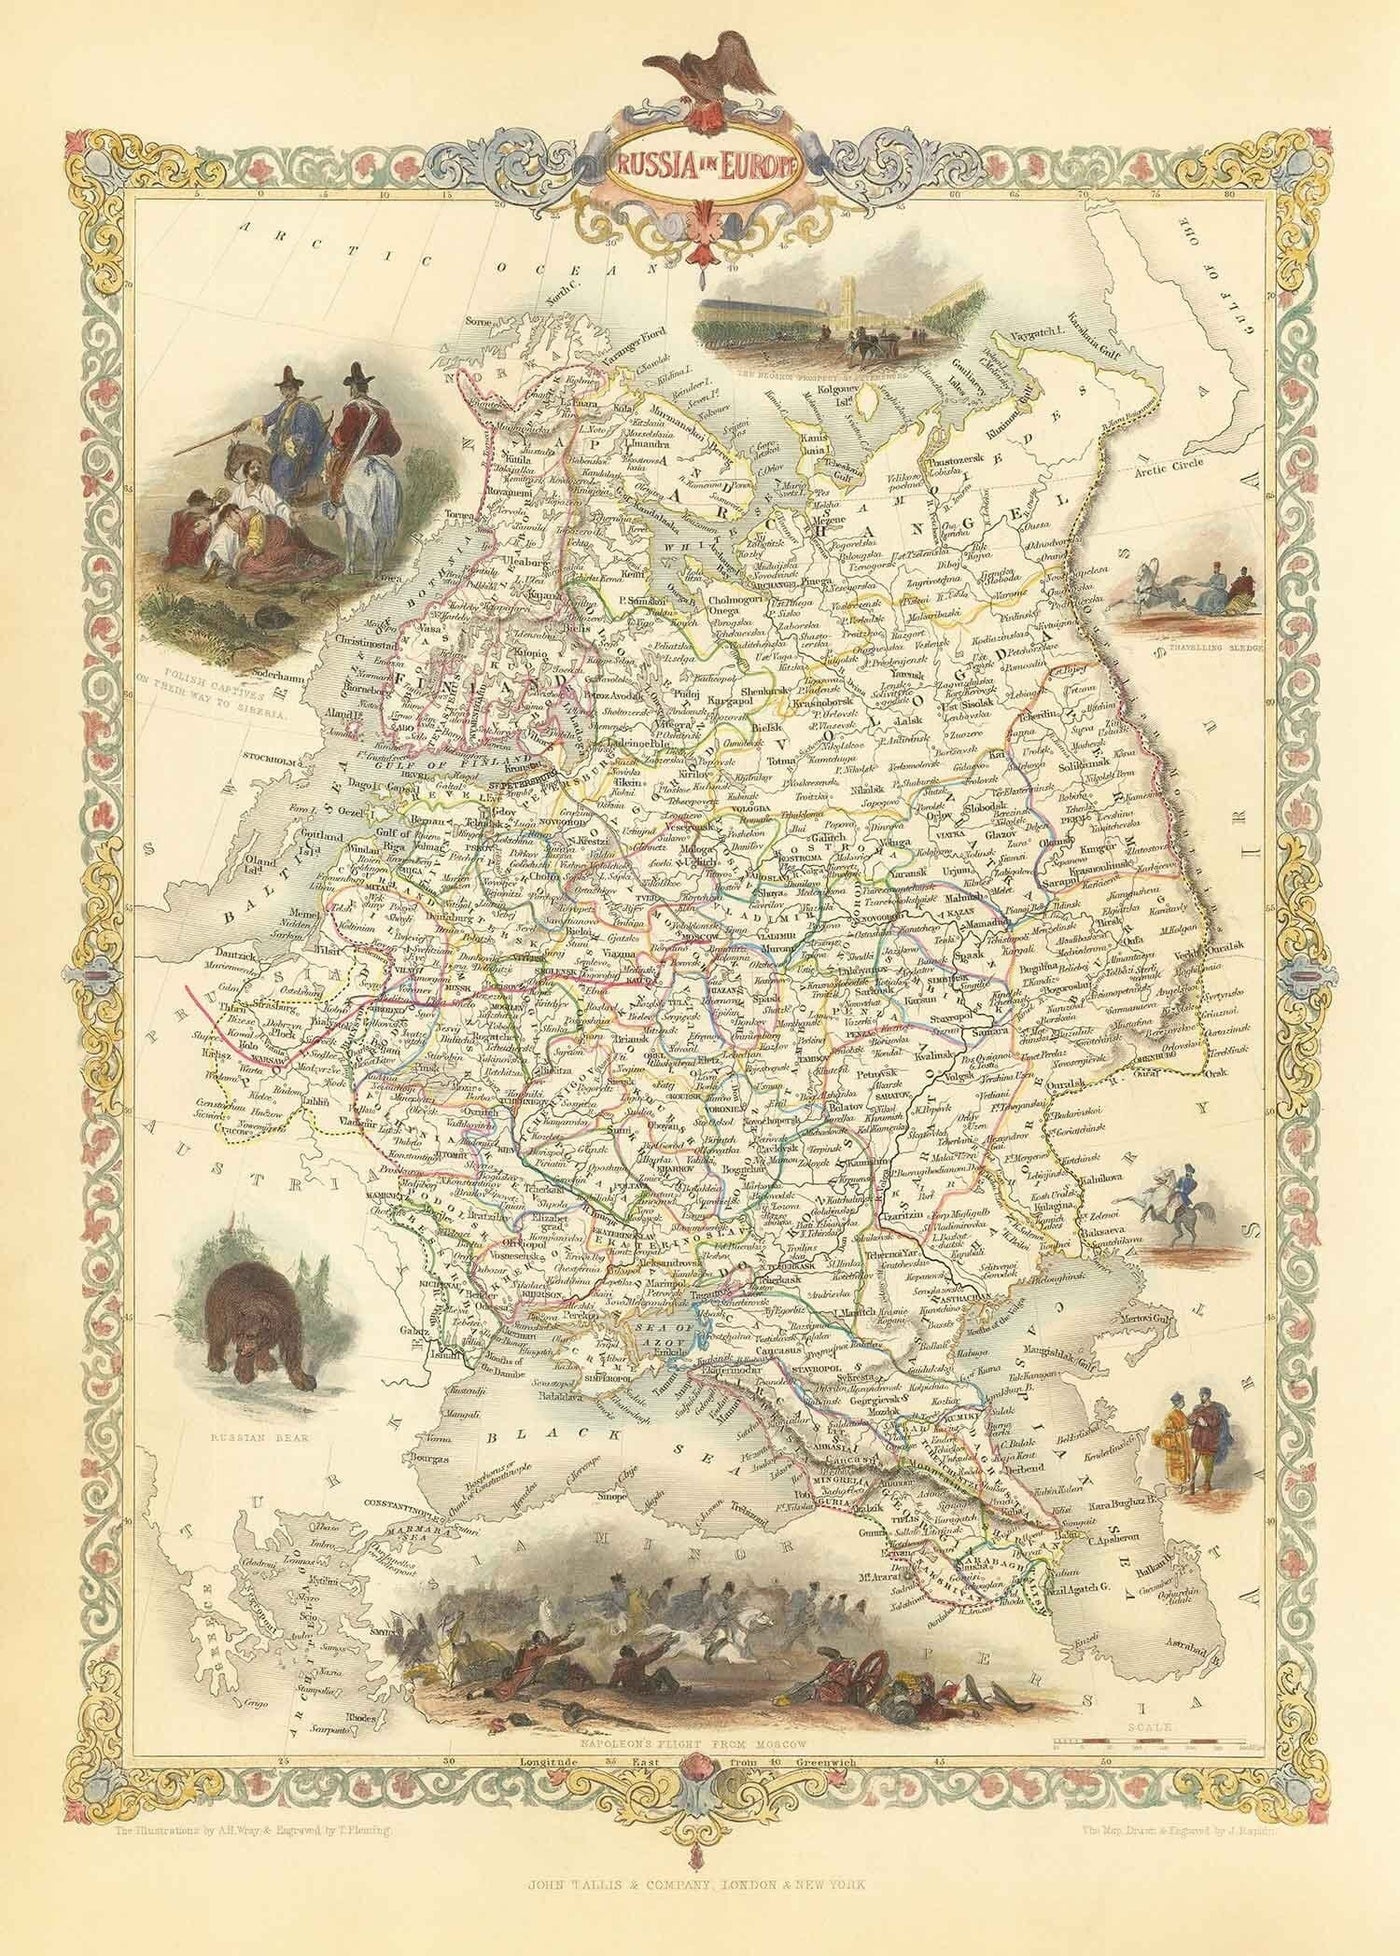 Antiguo mapa del Imperio Ruso en Europa, 1851 - Moscú, Napoleón, Finlandia, Crimea, Ucrania, Minsk, San Petersburgo